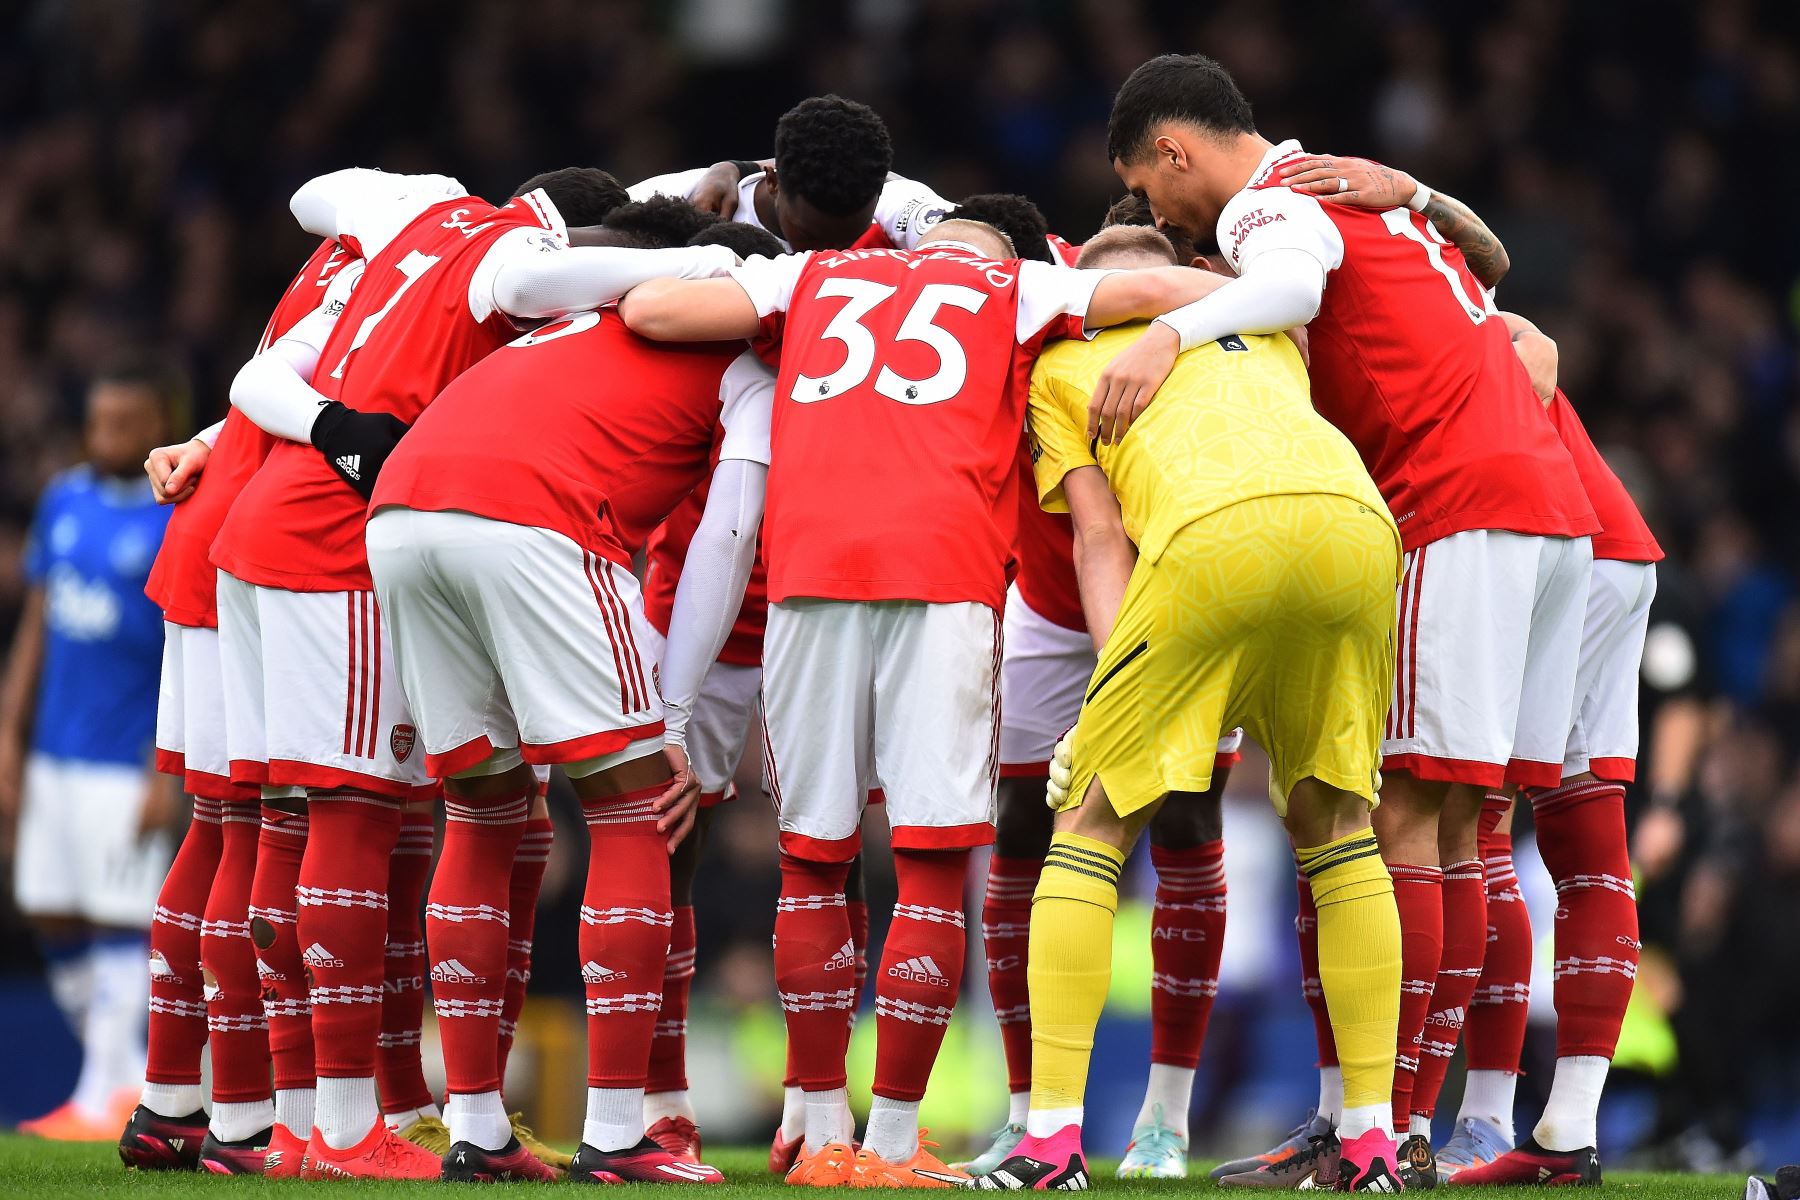 Los jugadores del Arsenal se reúnen antes del partido de fútbol de la Premier League inglesa entre el Everton FC y el Arsenal de Londres en Liverpool, Reino Unido.
Foto: EFE